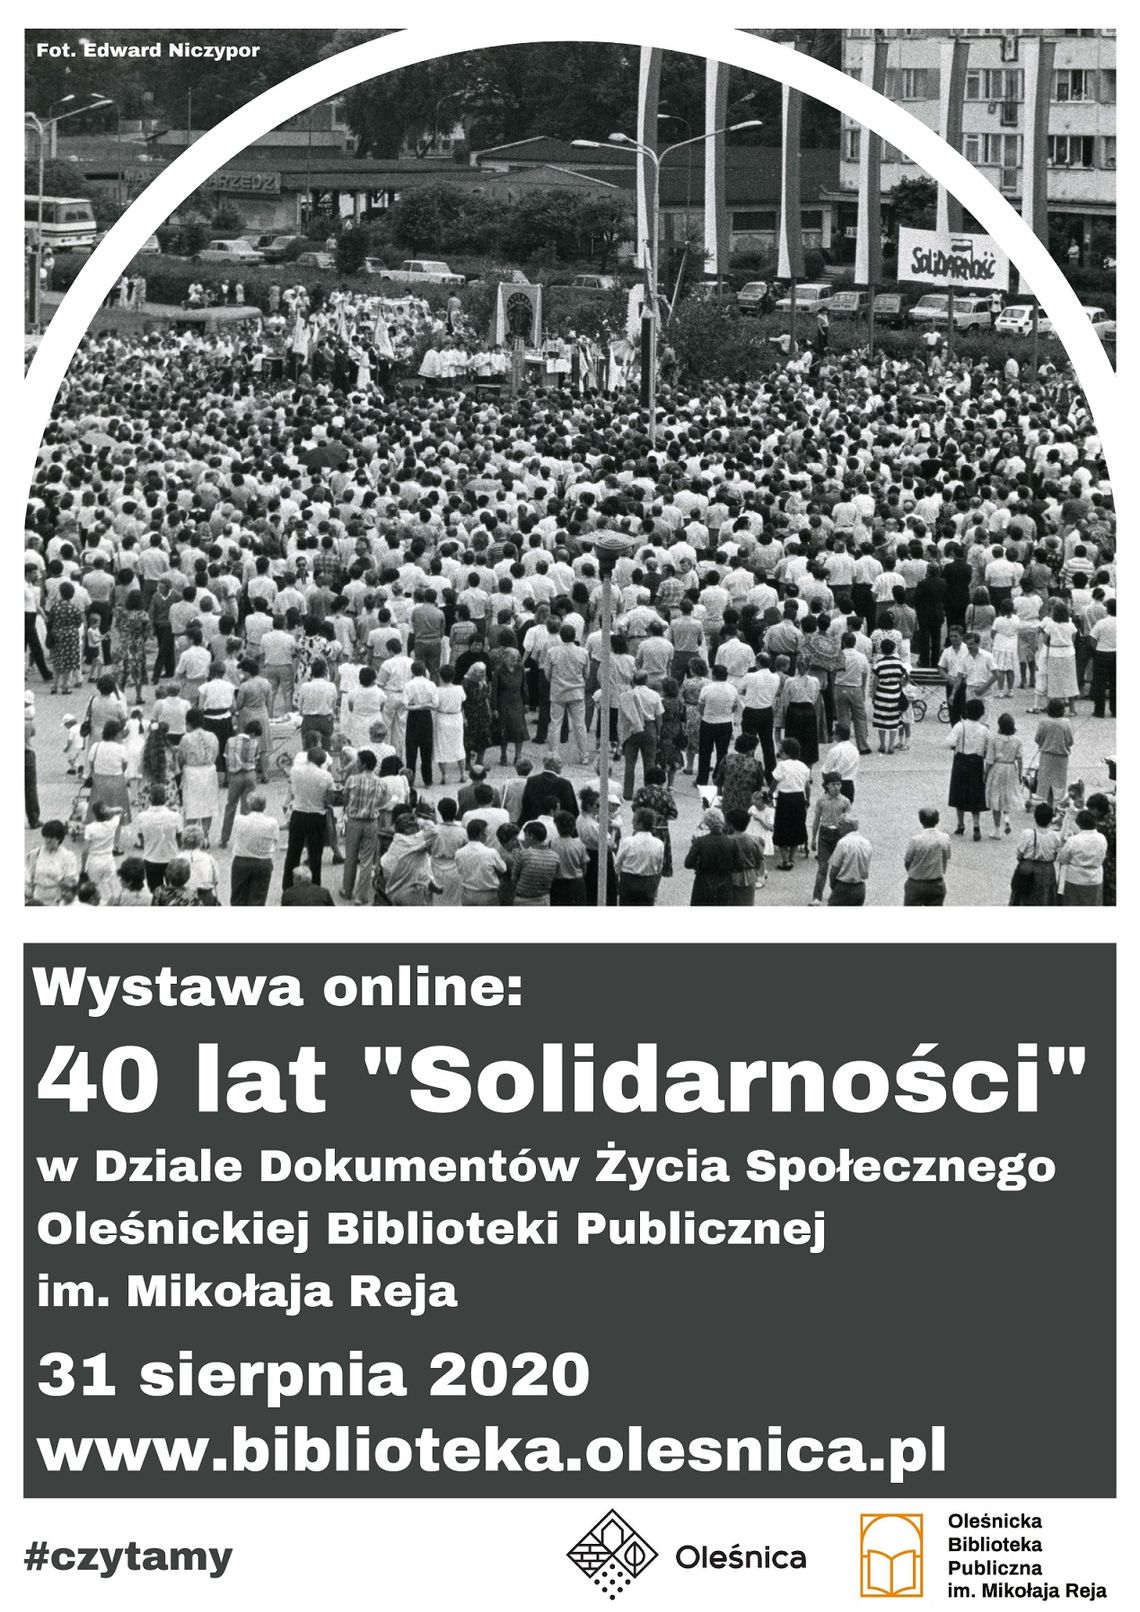 Biblioteka w Oleśnicy zaprasza na wystawę "40 lat "Solidarności"